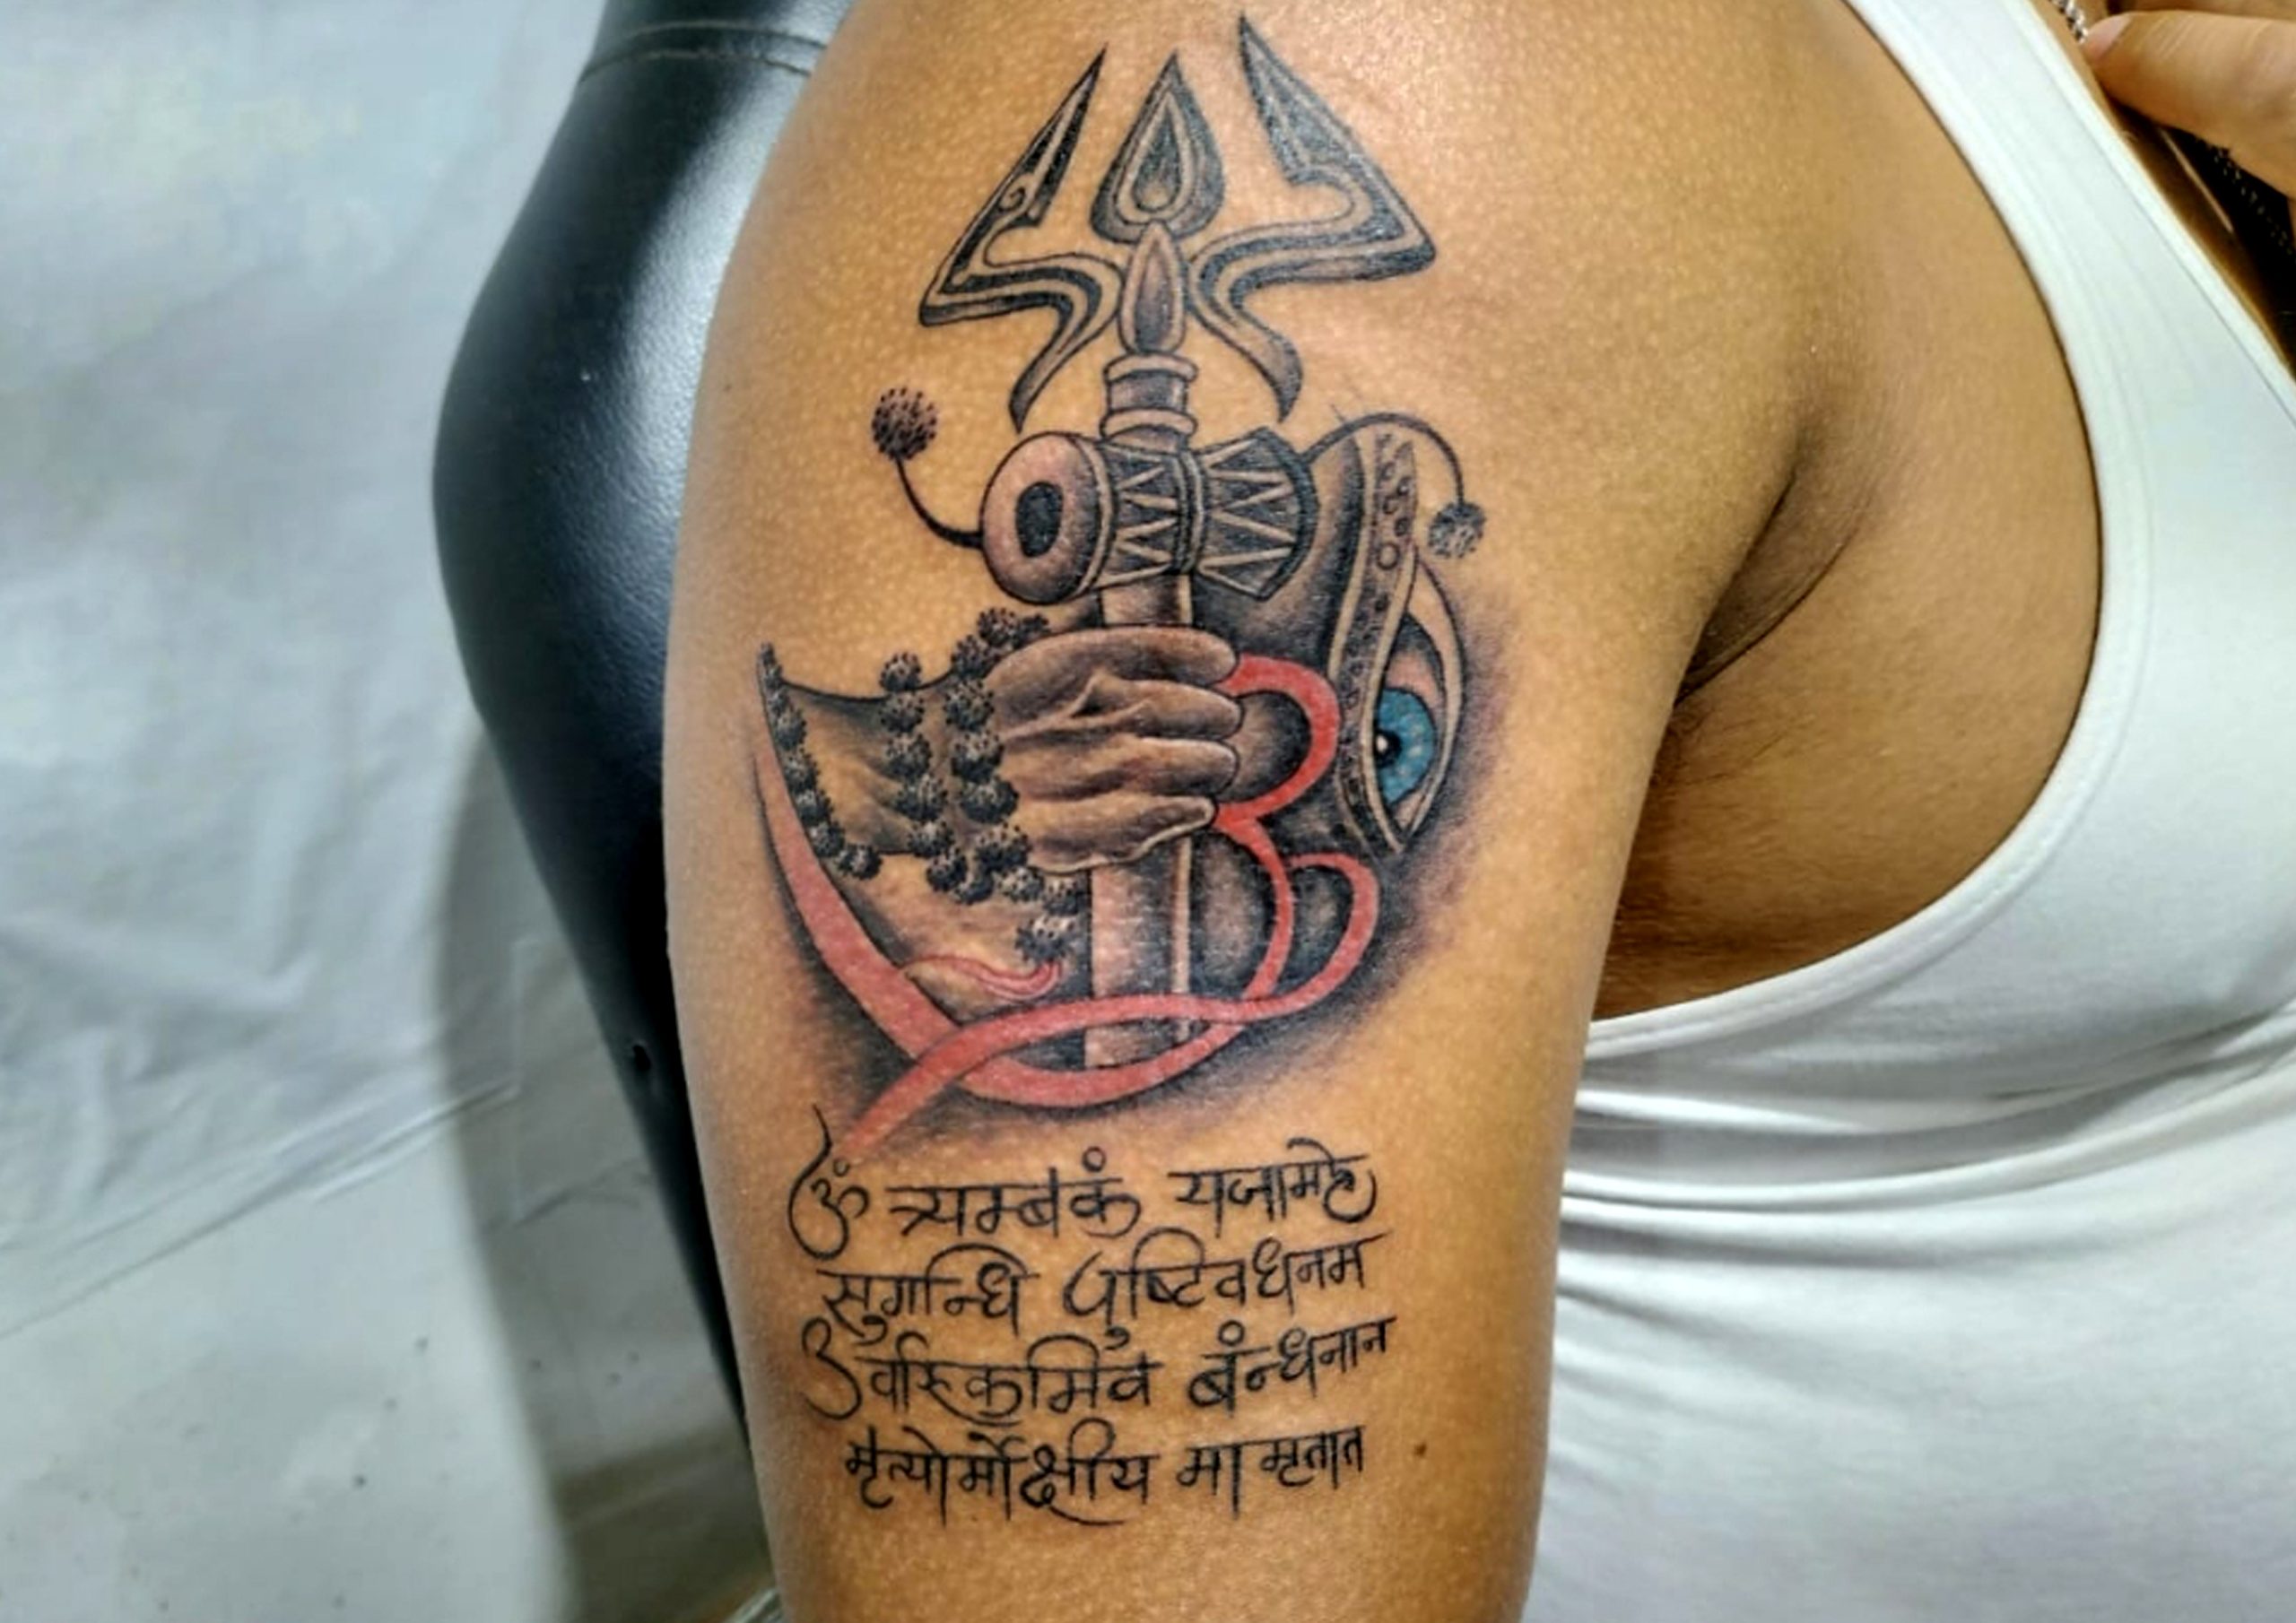 Trishula tattoo design  Shiva tattoo design Trishul tattoo designs Hand  tattoos for guys